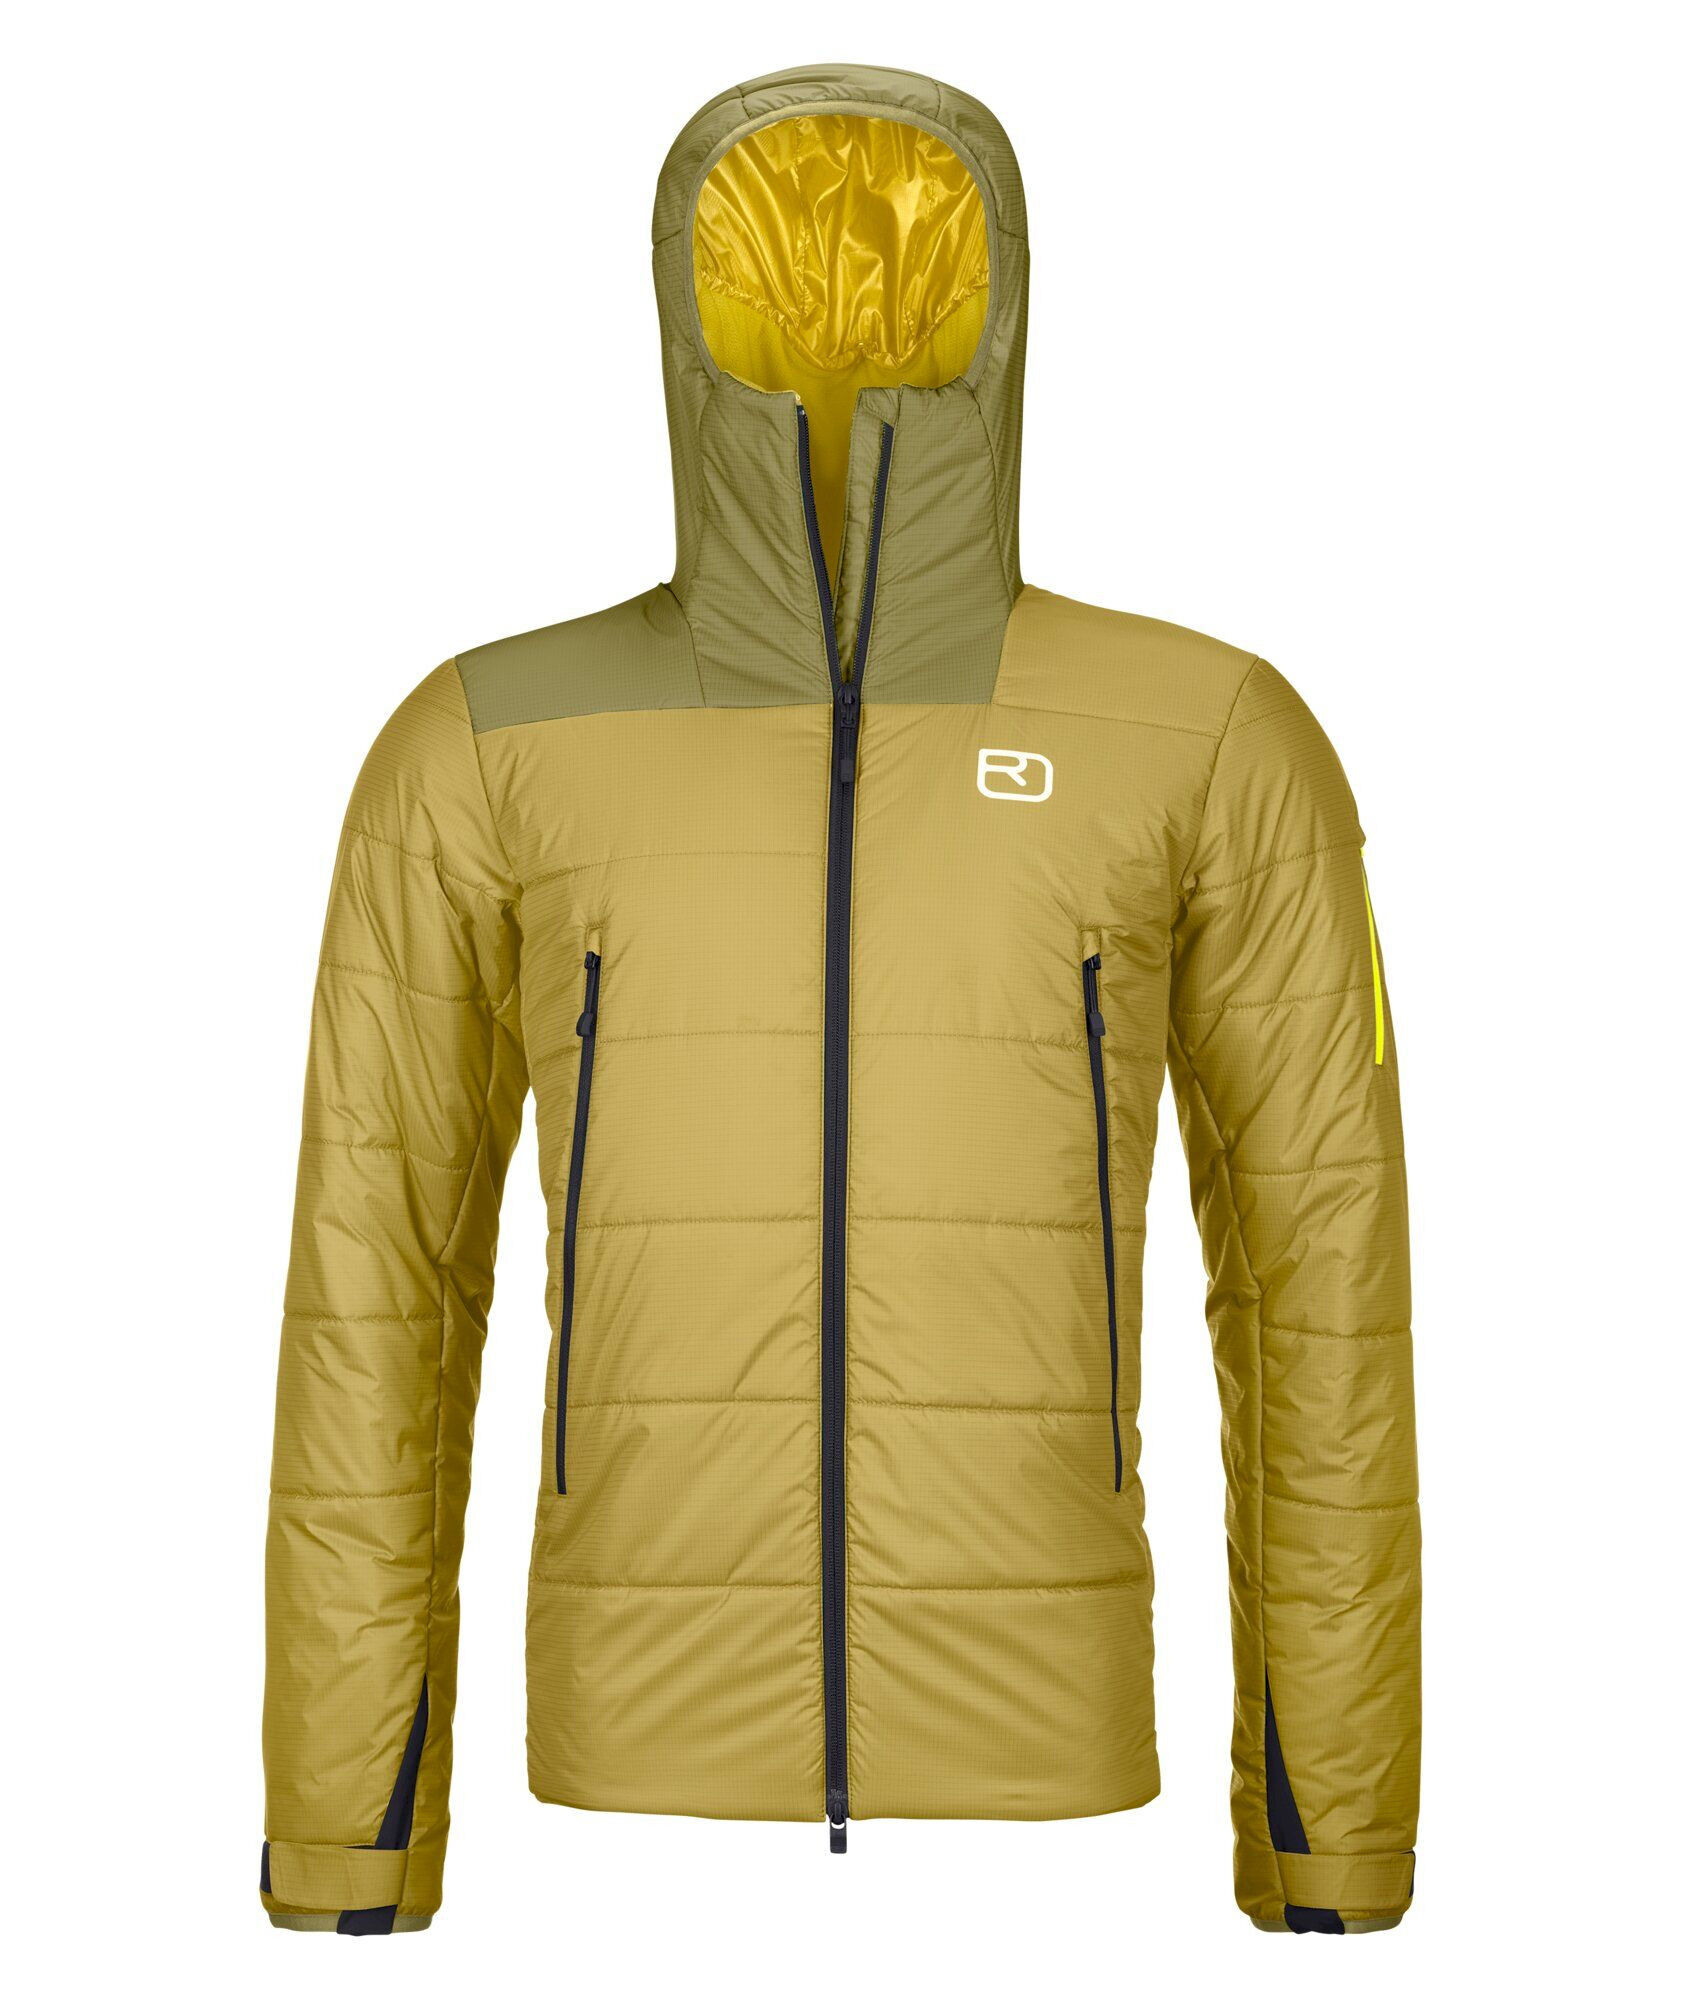 Ortovox Swisswool Zinal Jacket - Chaqueta de fibra sintética - Hombre